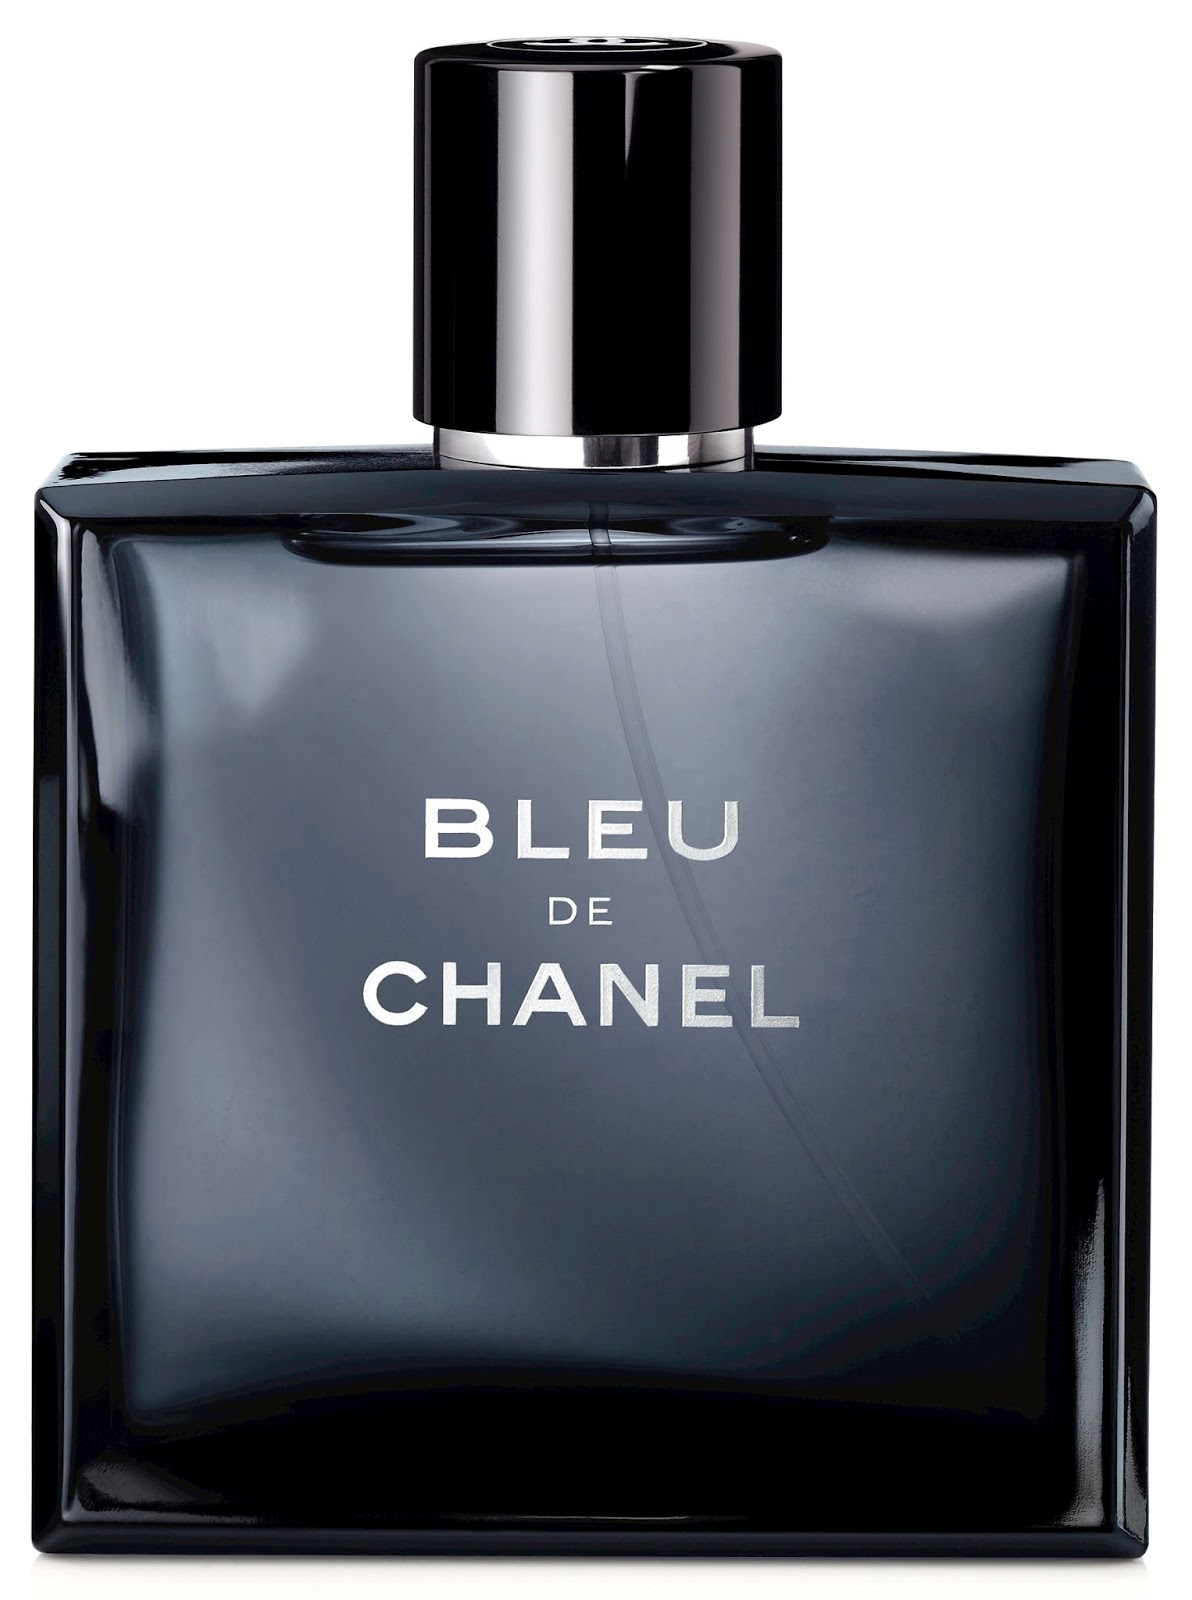 Make Up For Dolls: Chanel in Black & Blue